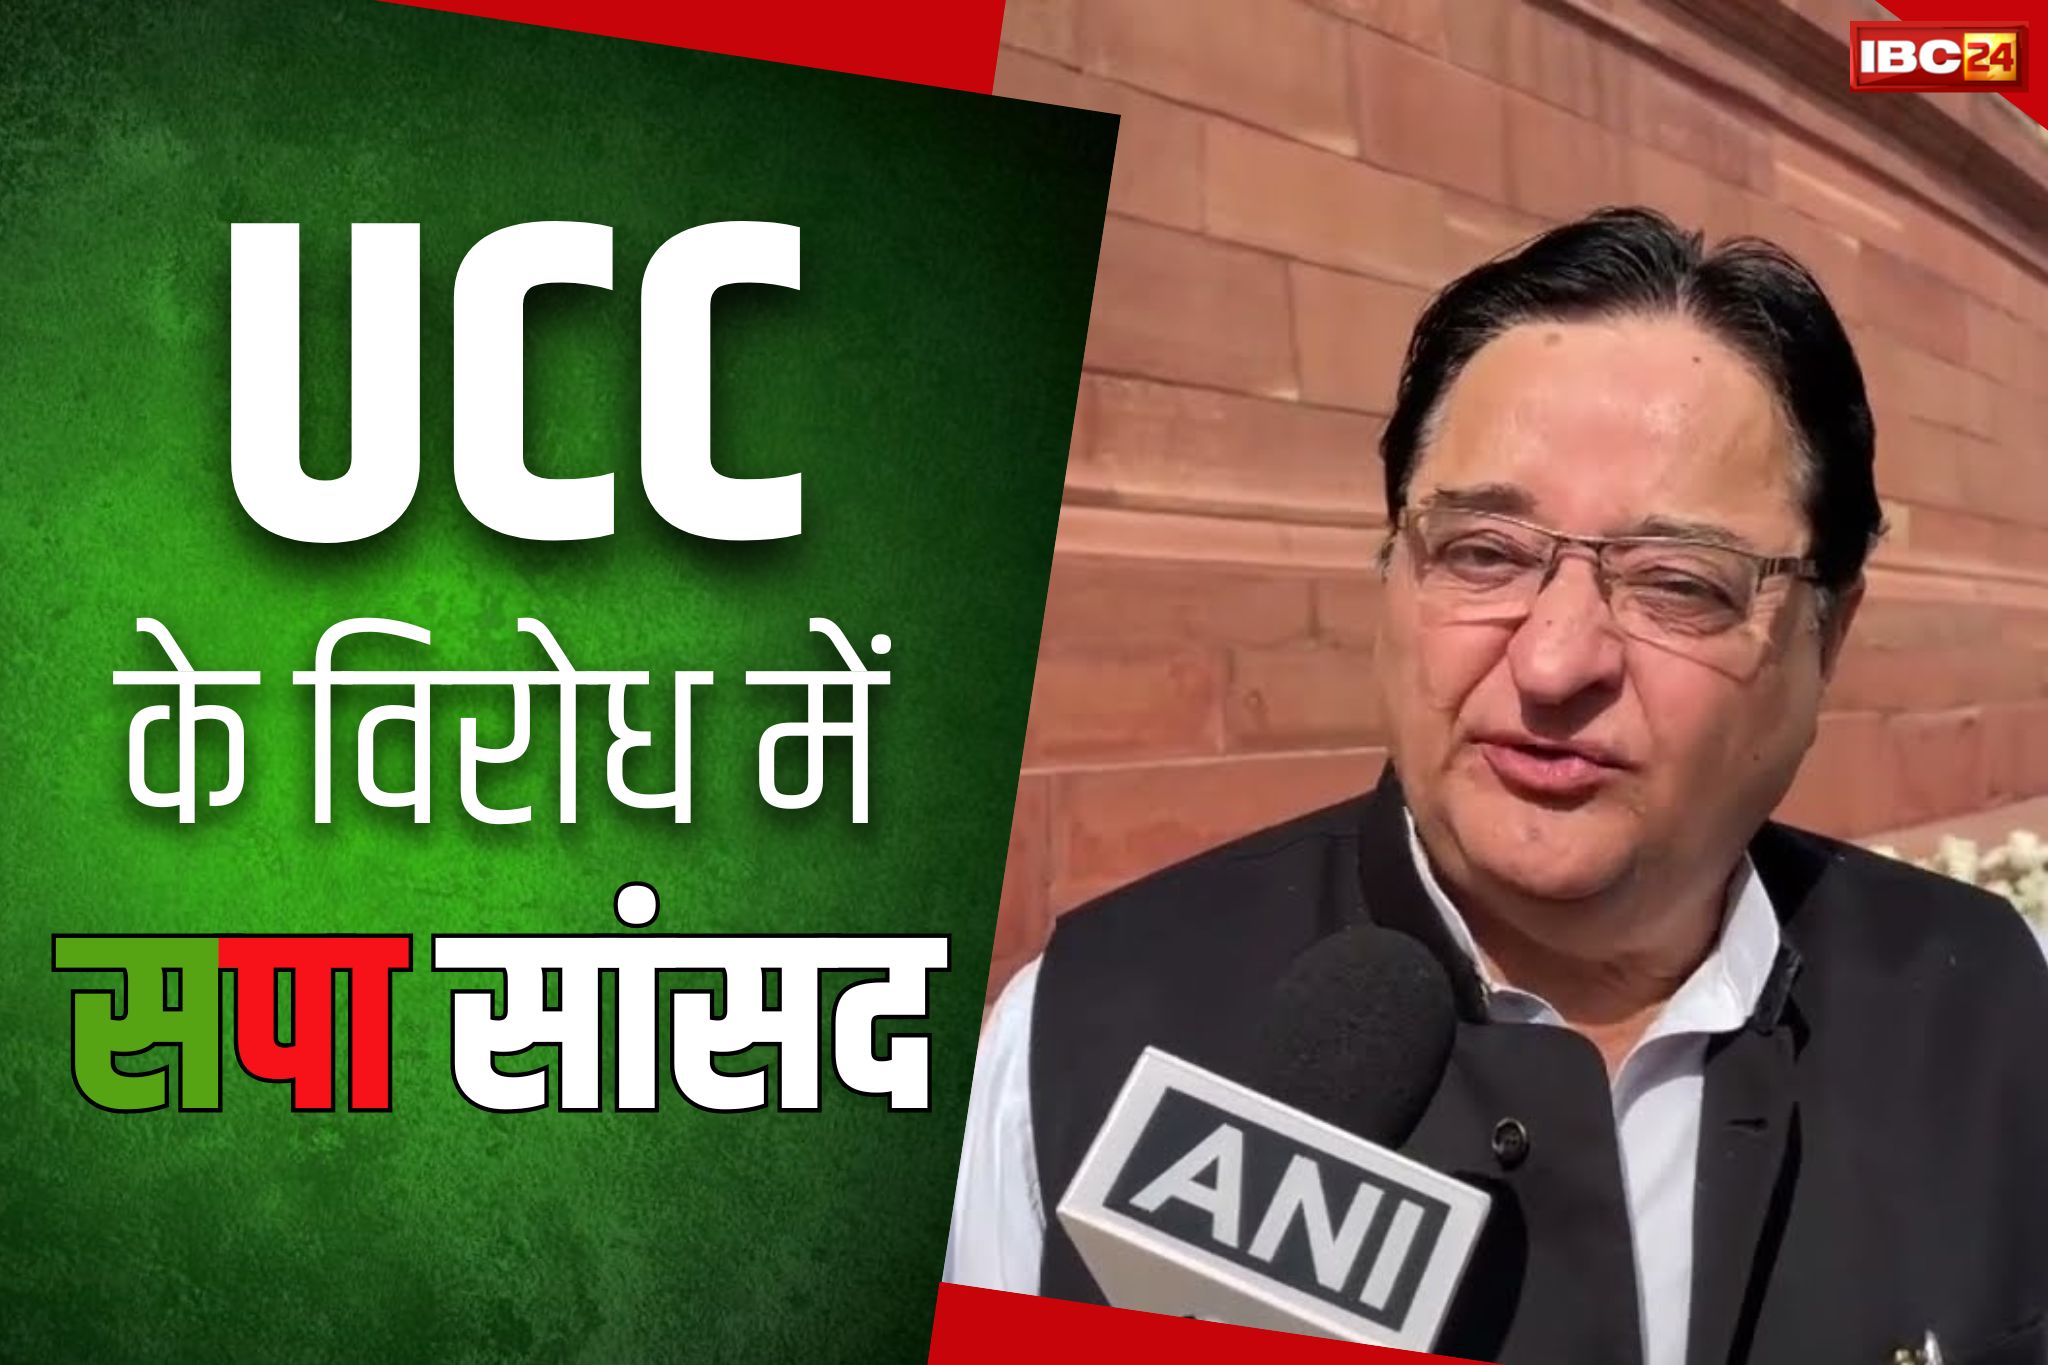 Uttarakhand UCC: यूसीसी पर सपा सांसद एसटी हसन कहा, ‘जो कानून कुरआन और शरीयत के खिलाफ, उसे नहीं मानेंगे’.. बढ़ेगा विरोध